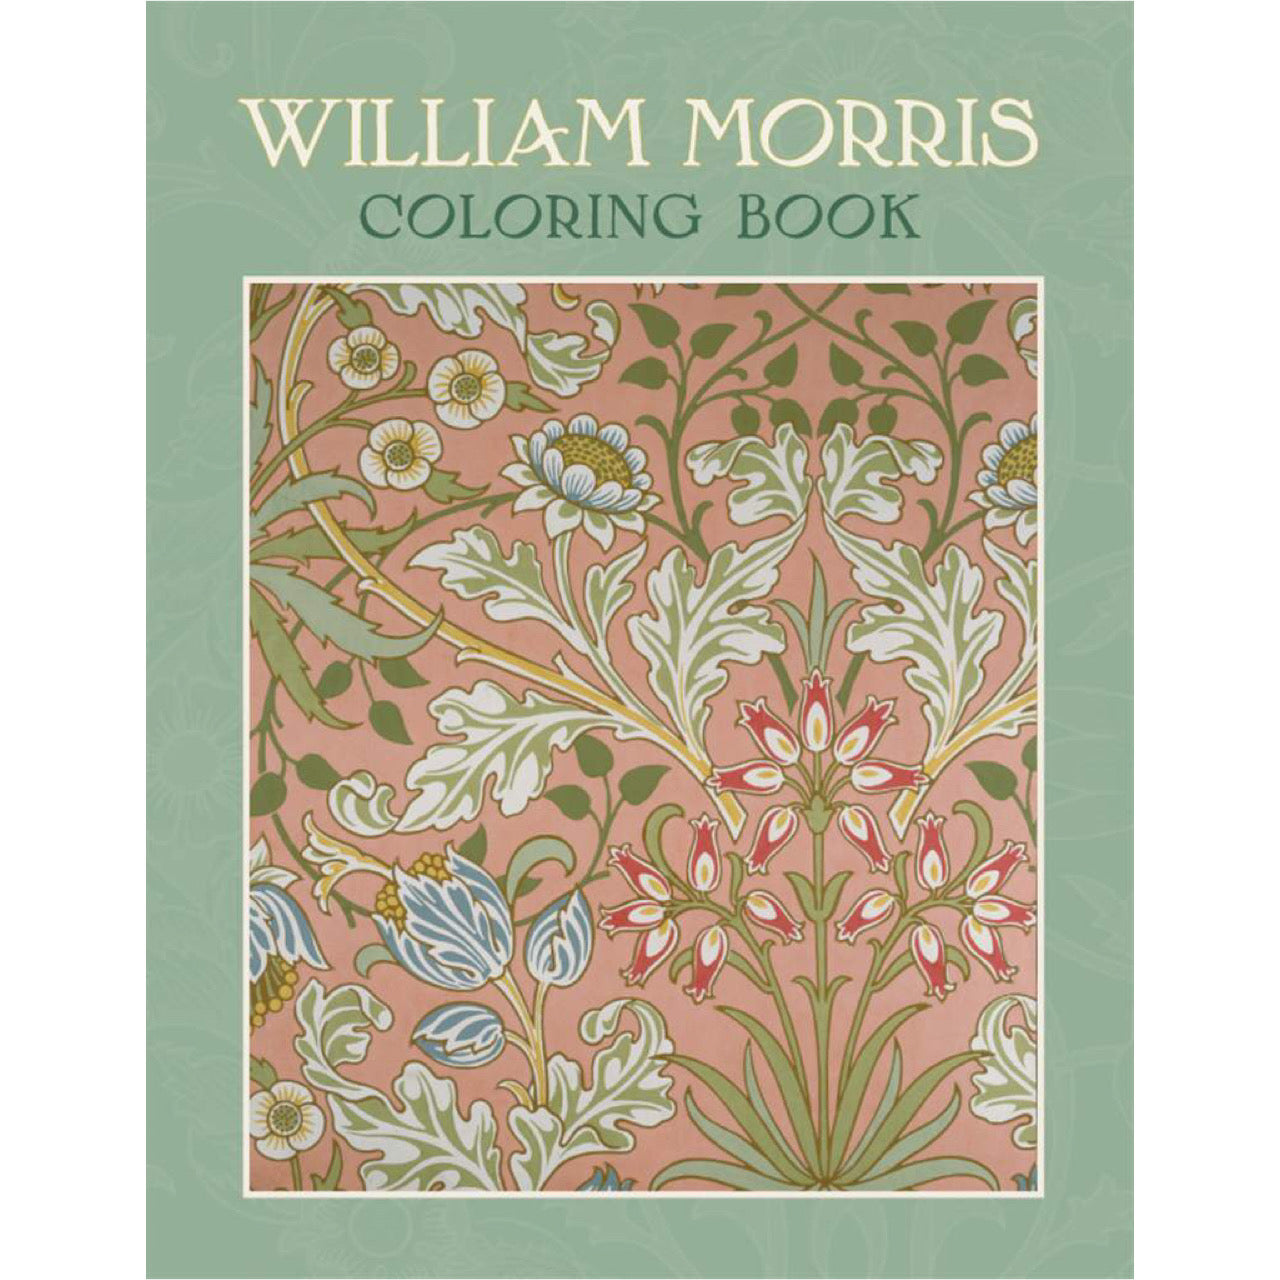 William Morris - Coloring Book